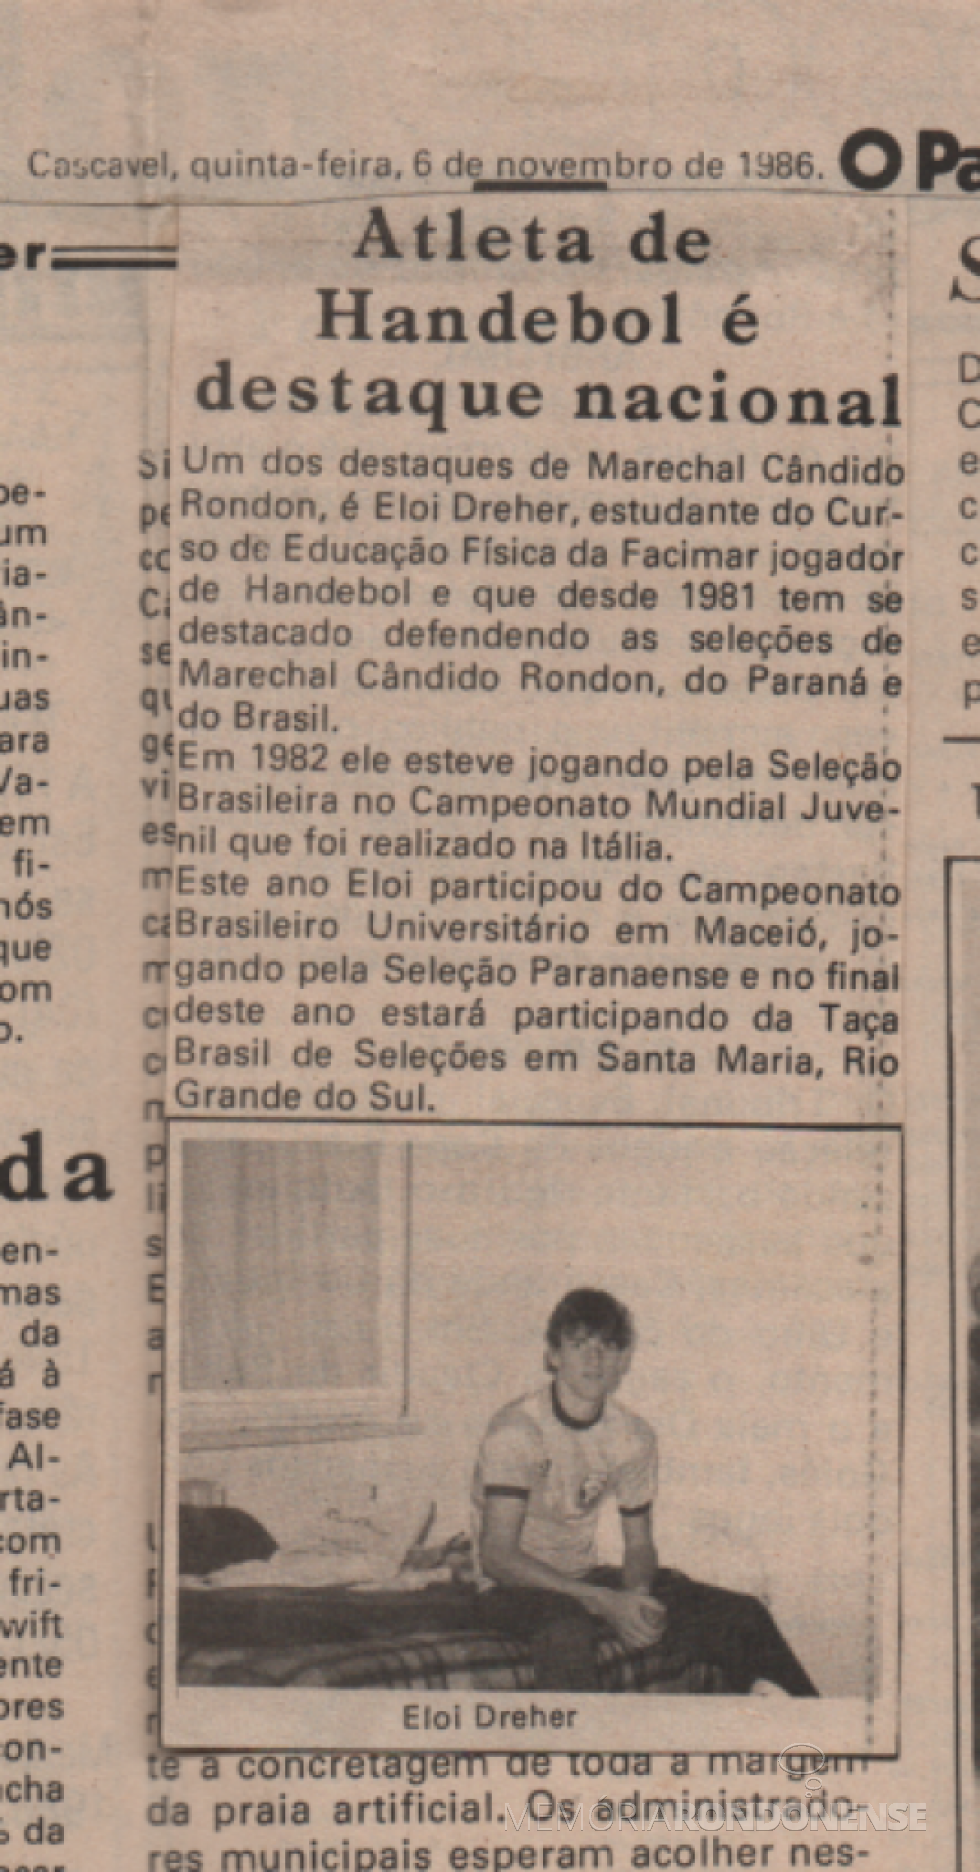 || Atleta rondonense Eloi Dreher em destaque no jornal cascavelense 